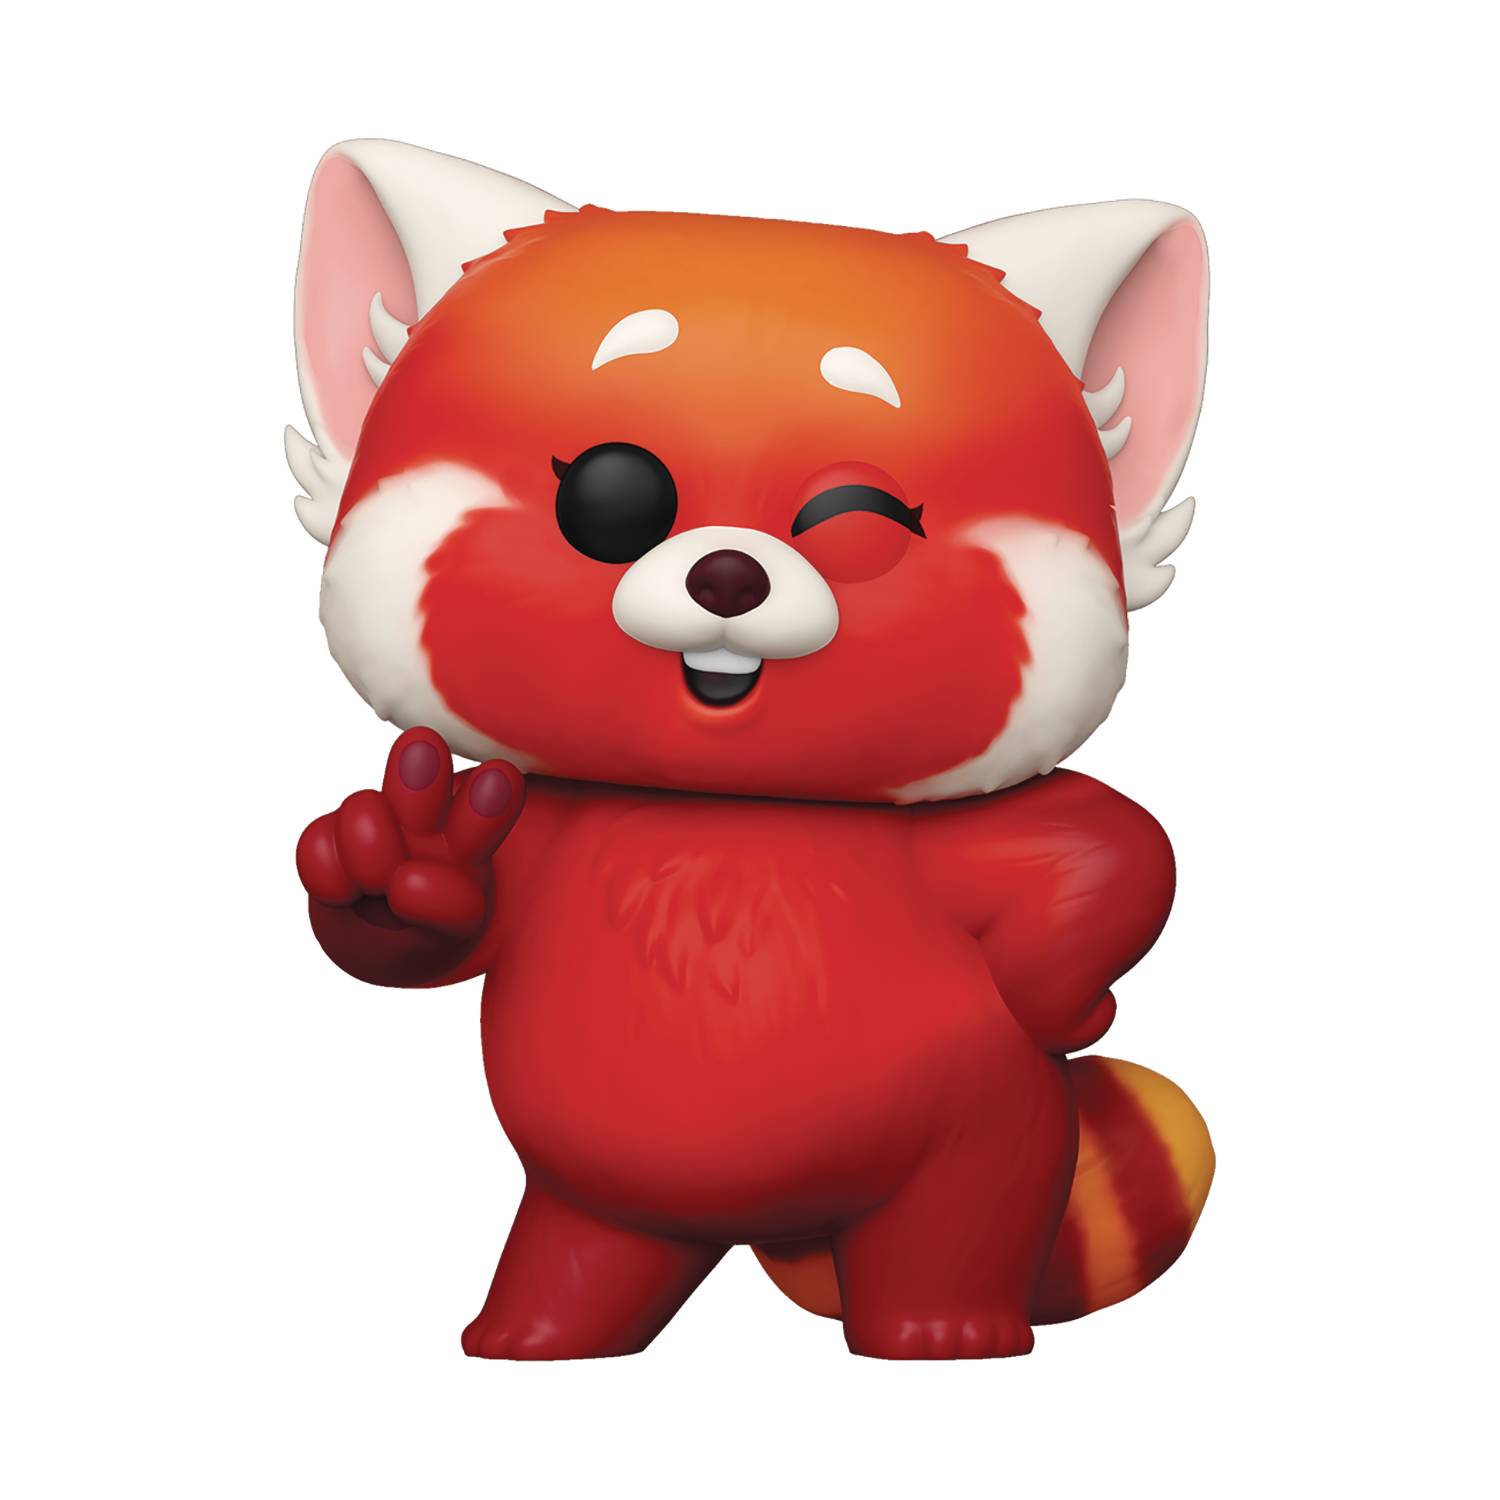 Turning Red: Mei's Red Panda 6" POP! Vinyl Figure by Funko